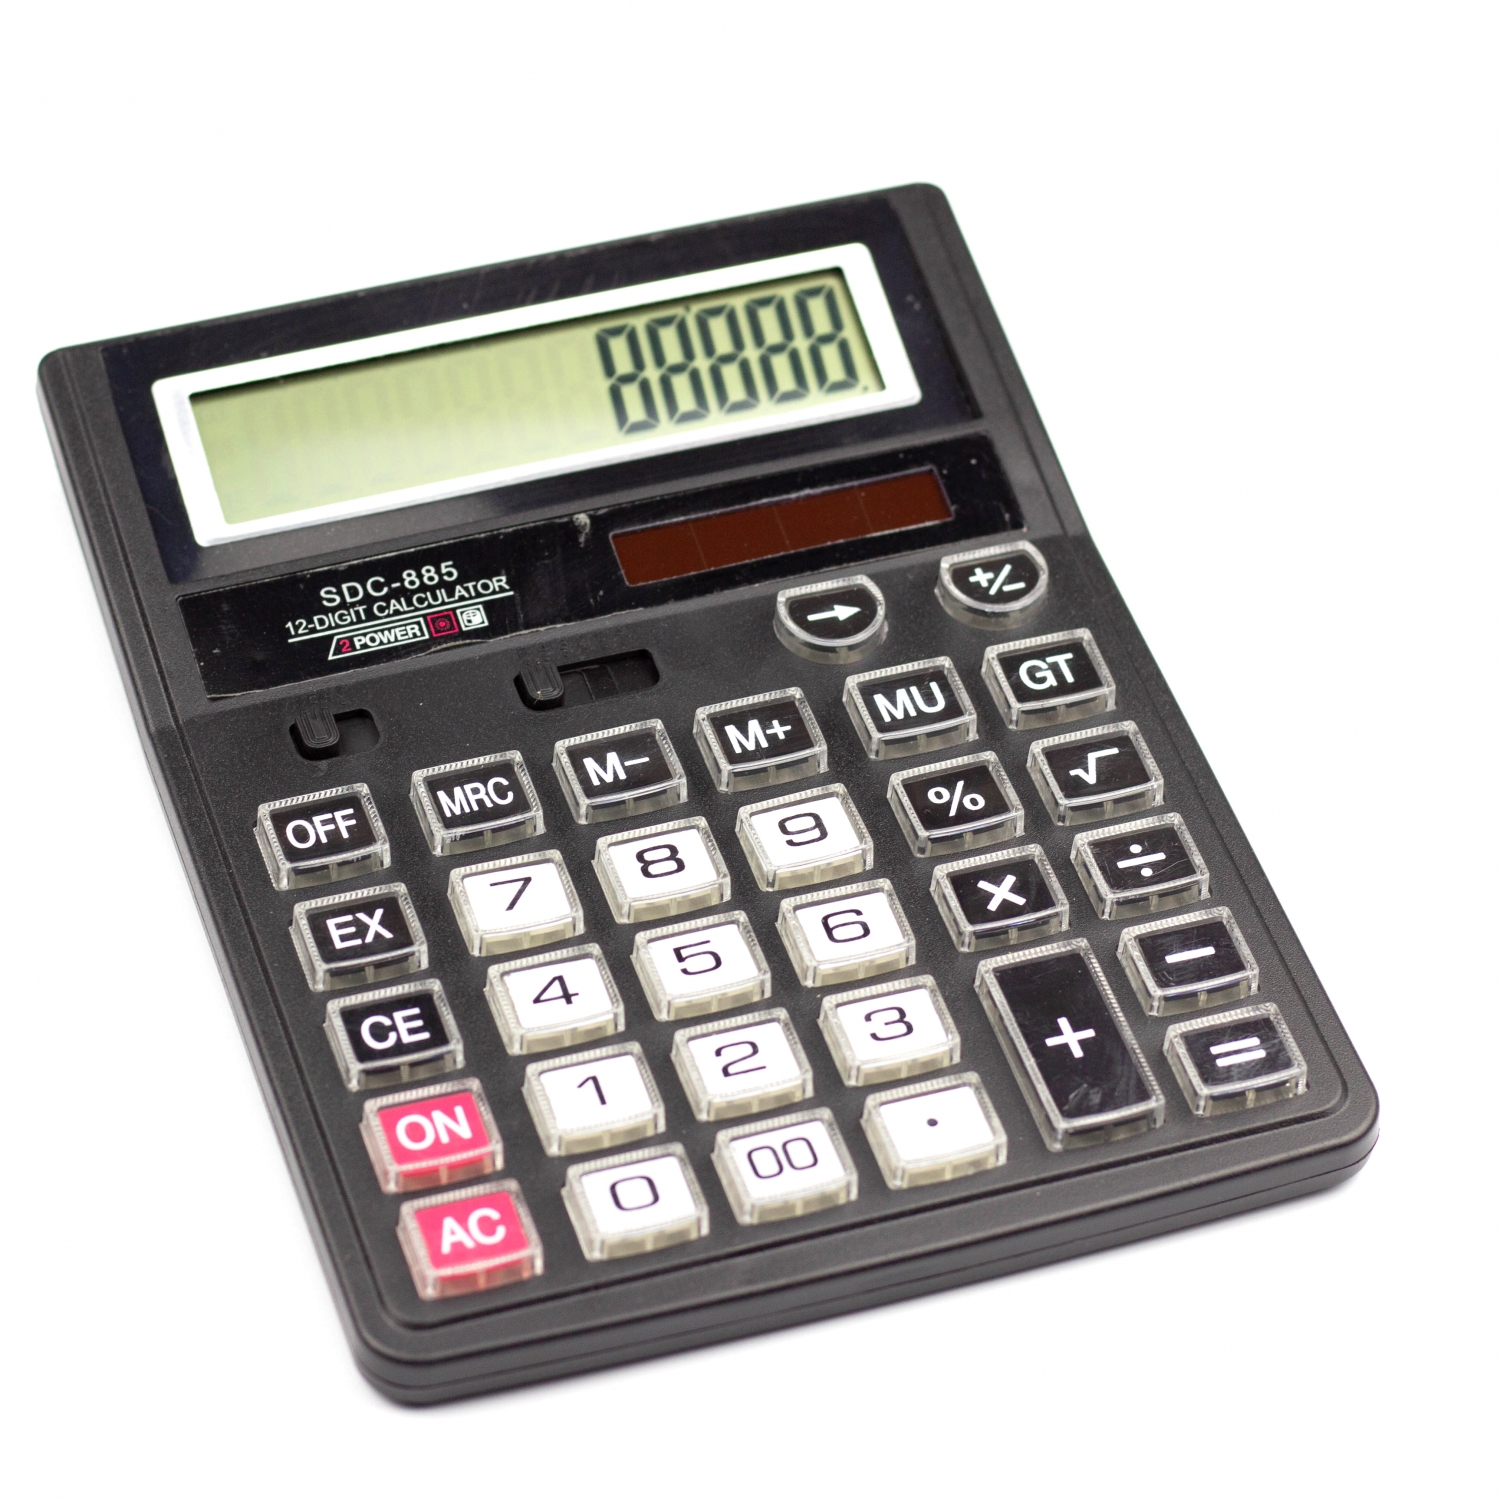 Калькулятор SDC-885 в коробке 12 разрядный AL6350 - Нижнекамск 